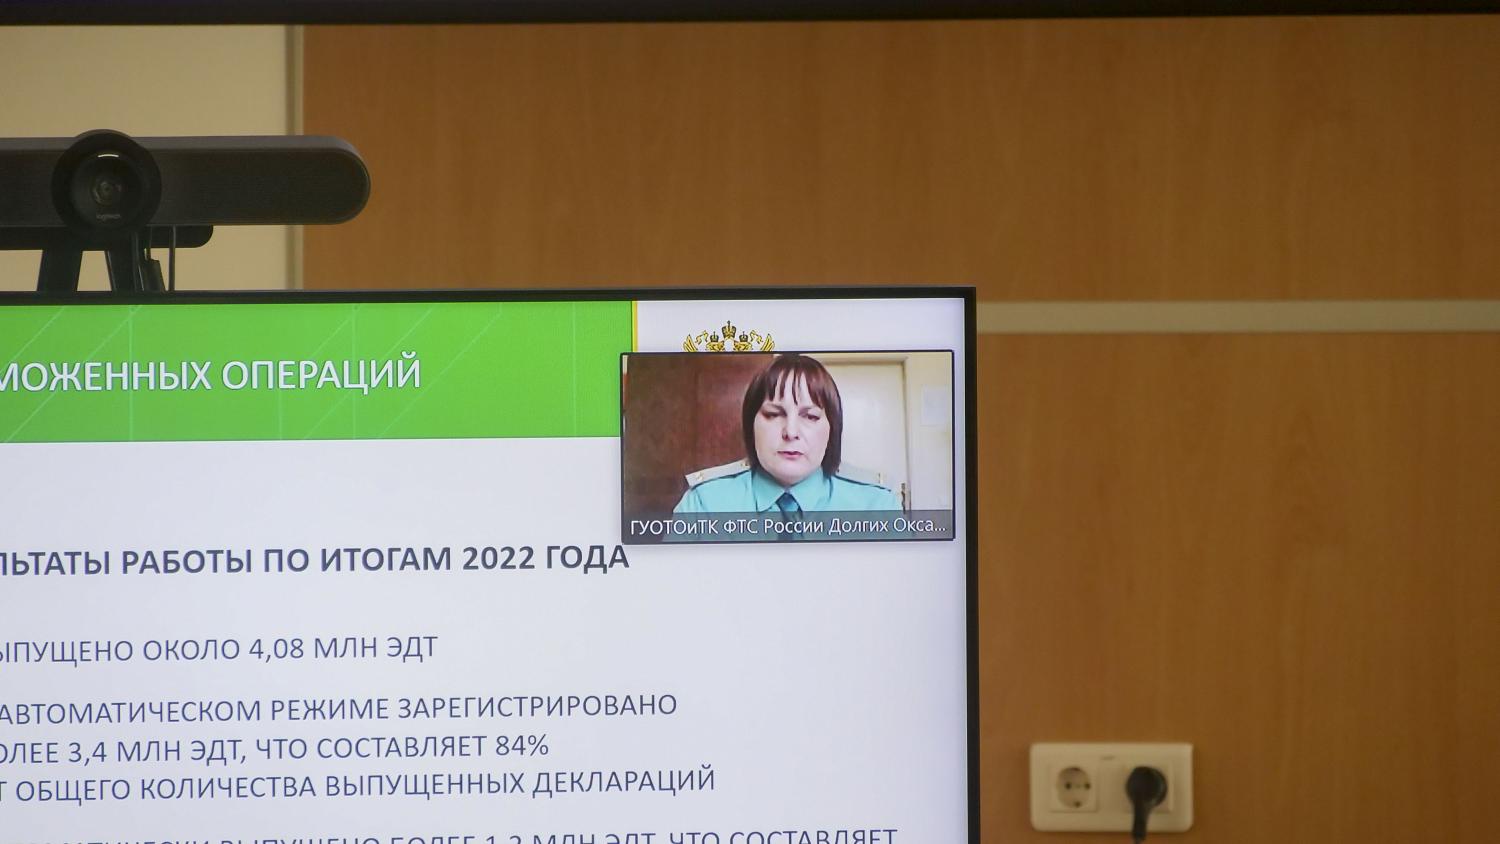 Представители ФТС России рассказали участникам ВЭД об актуальных изменениях в таможенном законодательстве